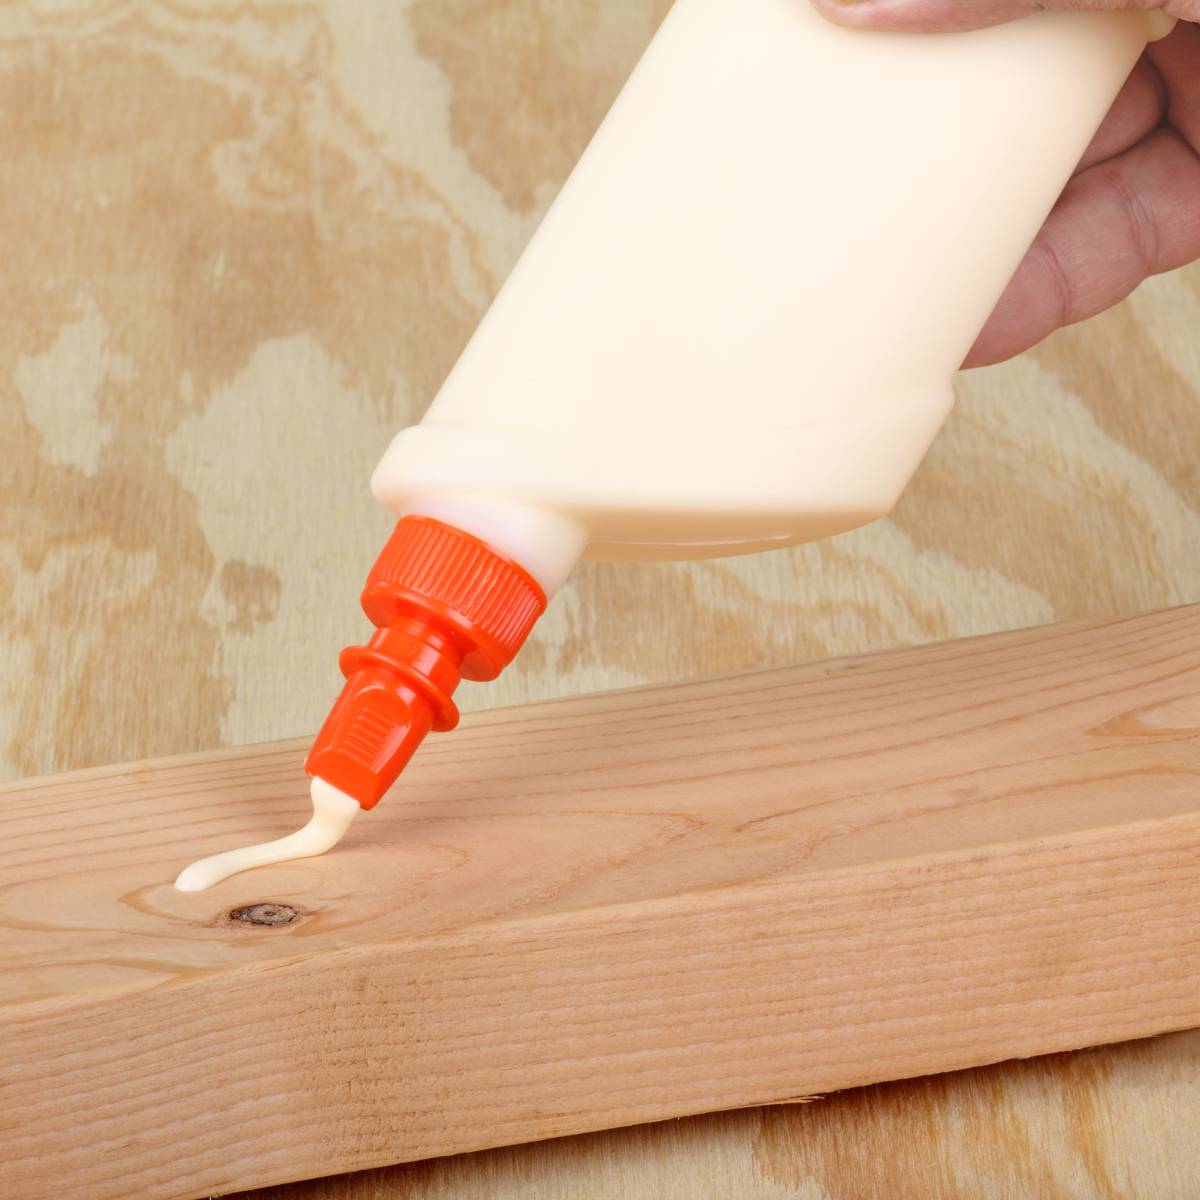 How to Glue Plexiglass to Wood